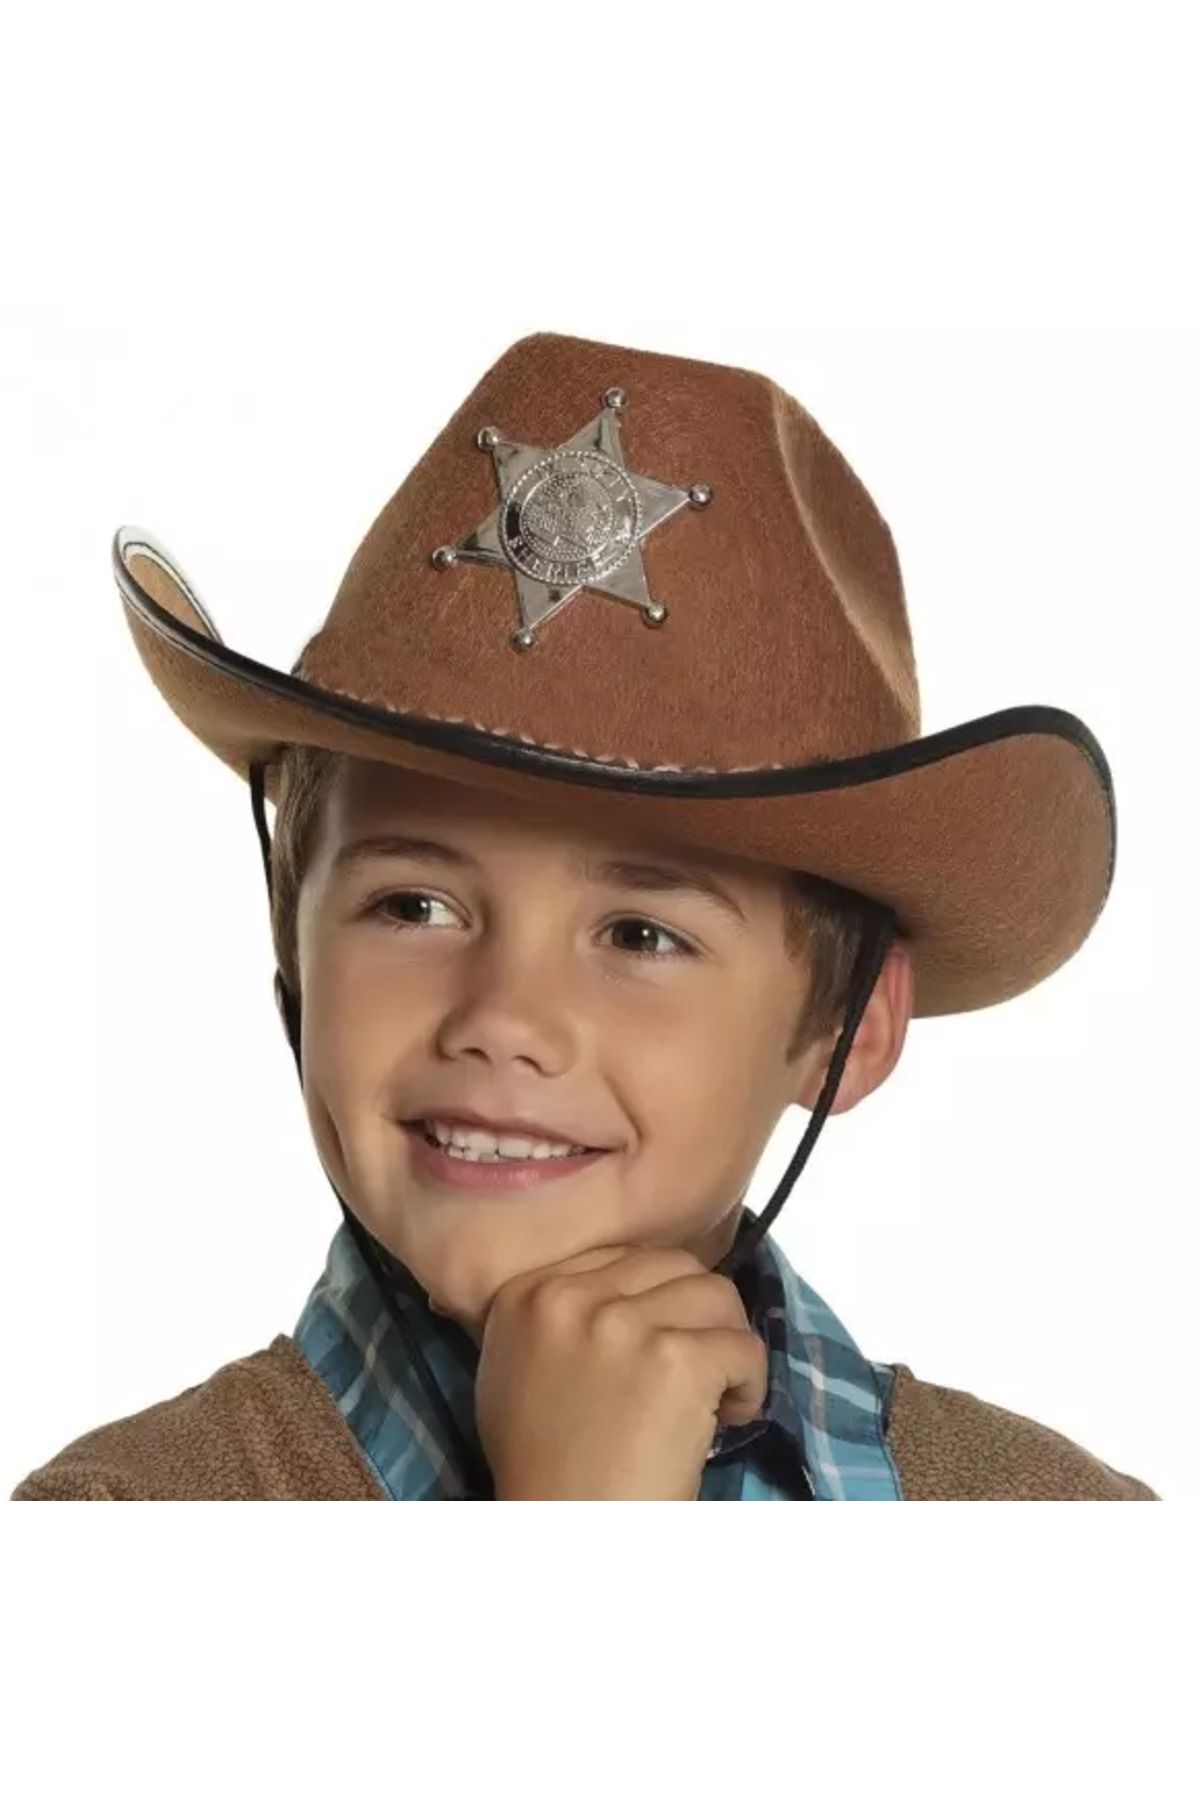 ihtiyaçavm Çocuk Kovboy Şapkası - Vahşi Batı Kovboy Şerif Şapkası Kahve Renk